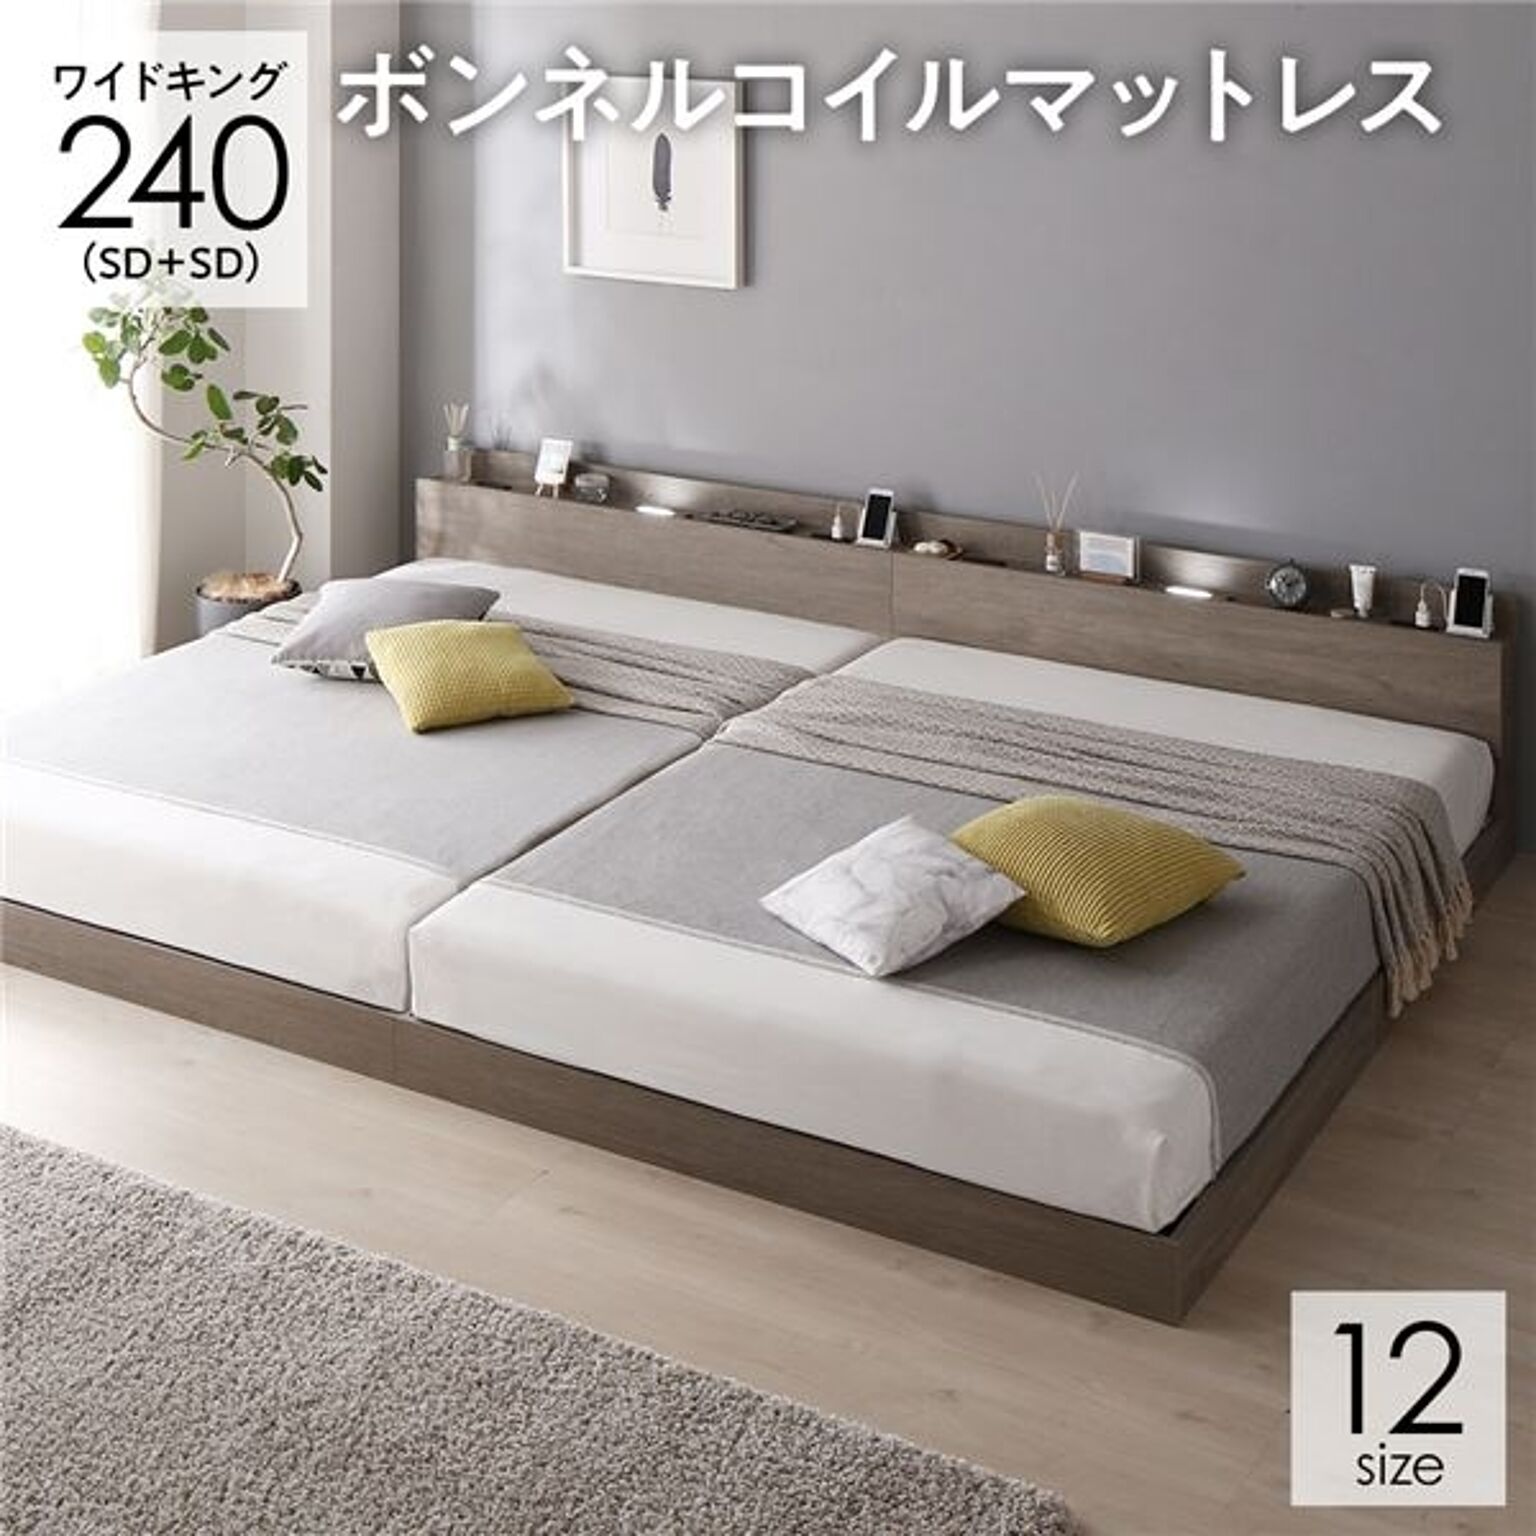 ベッド 連結ベッド ワイドキング 240(SD+SD セミダブル+セミダブル